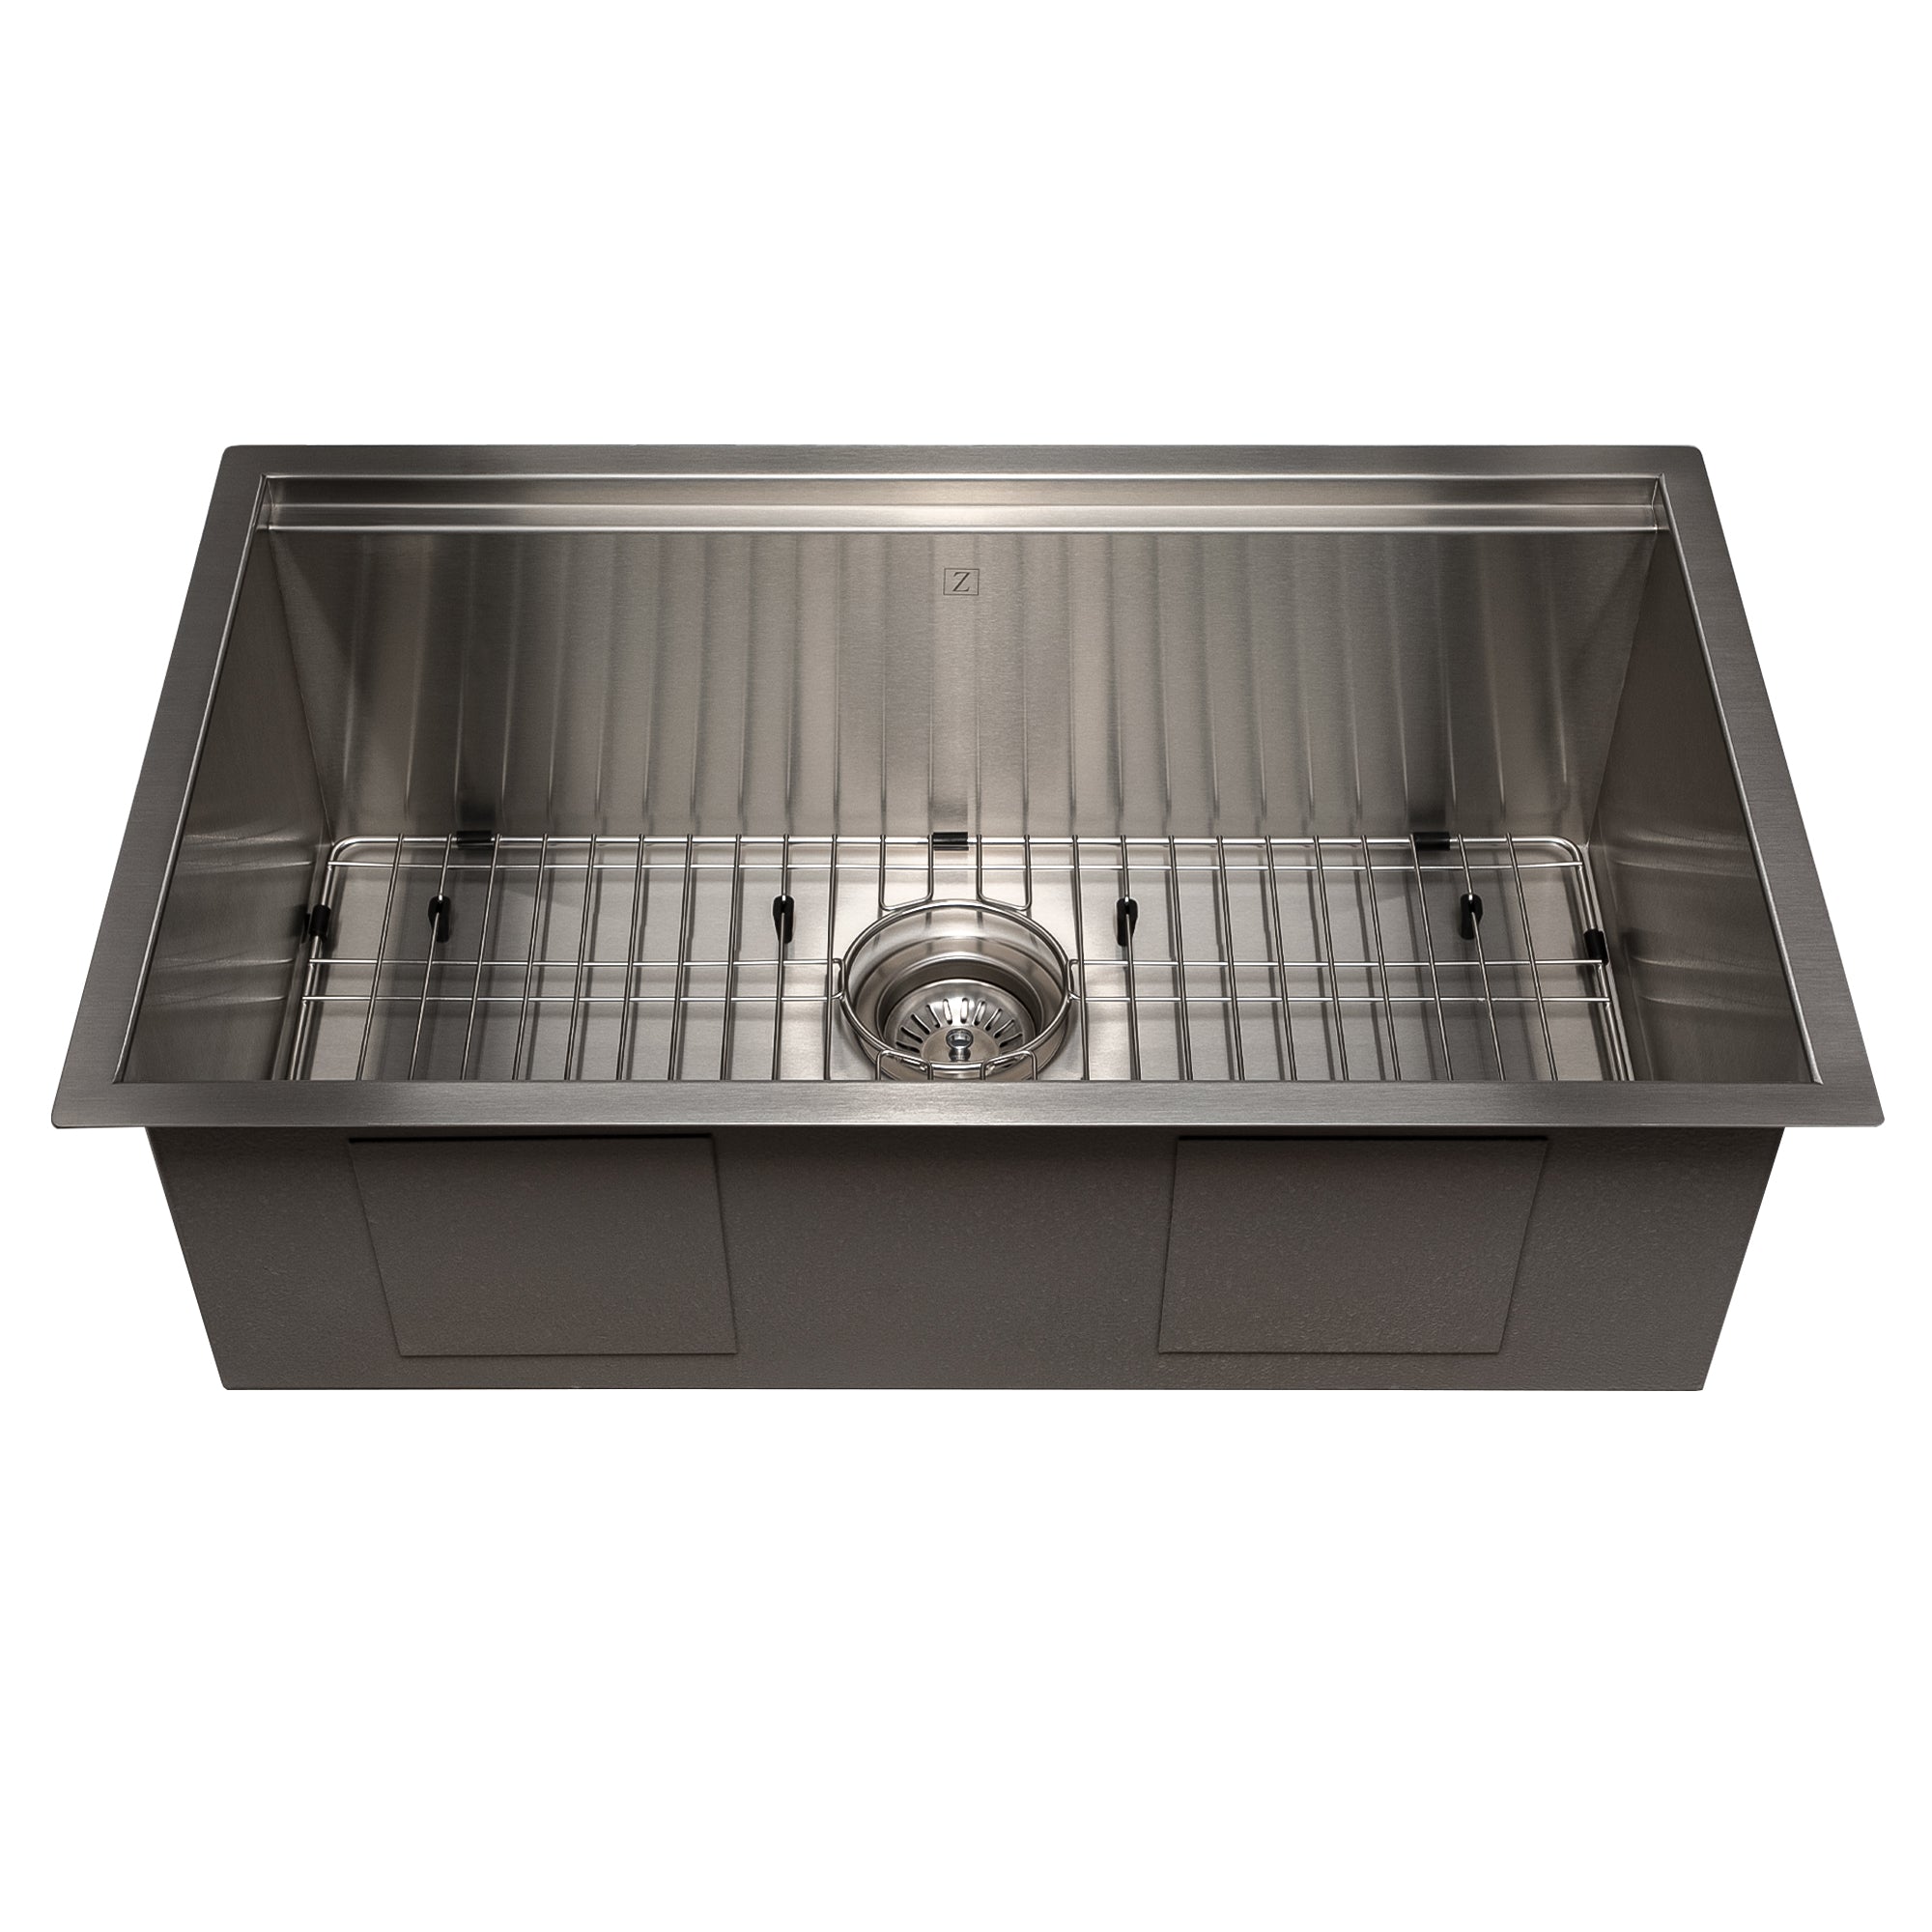 ZLINE 30" Garmisch Undermount Single Bowl Stainless Steel Kitchen Sink with Bottom Grid and Accessories (SLS-30)